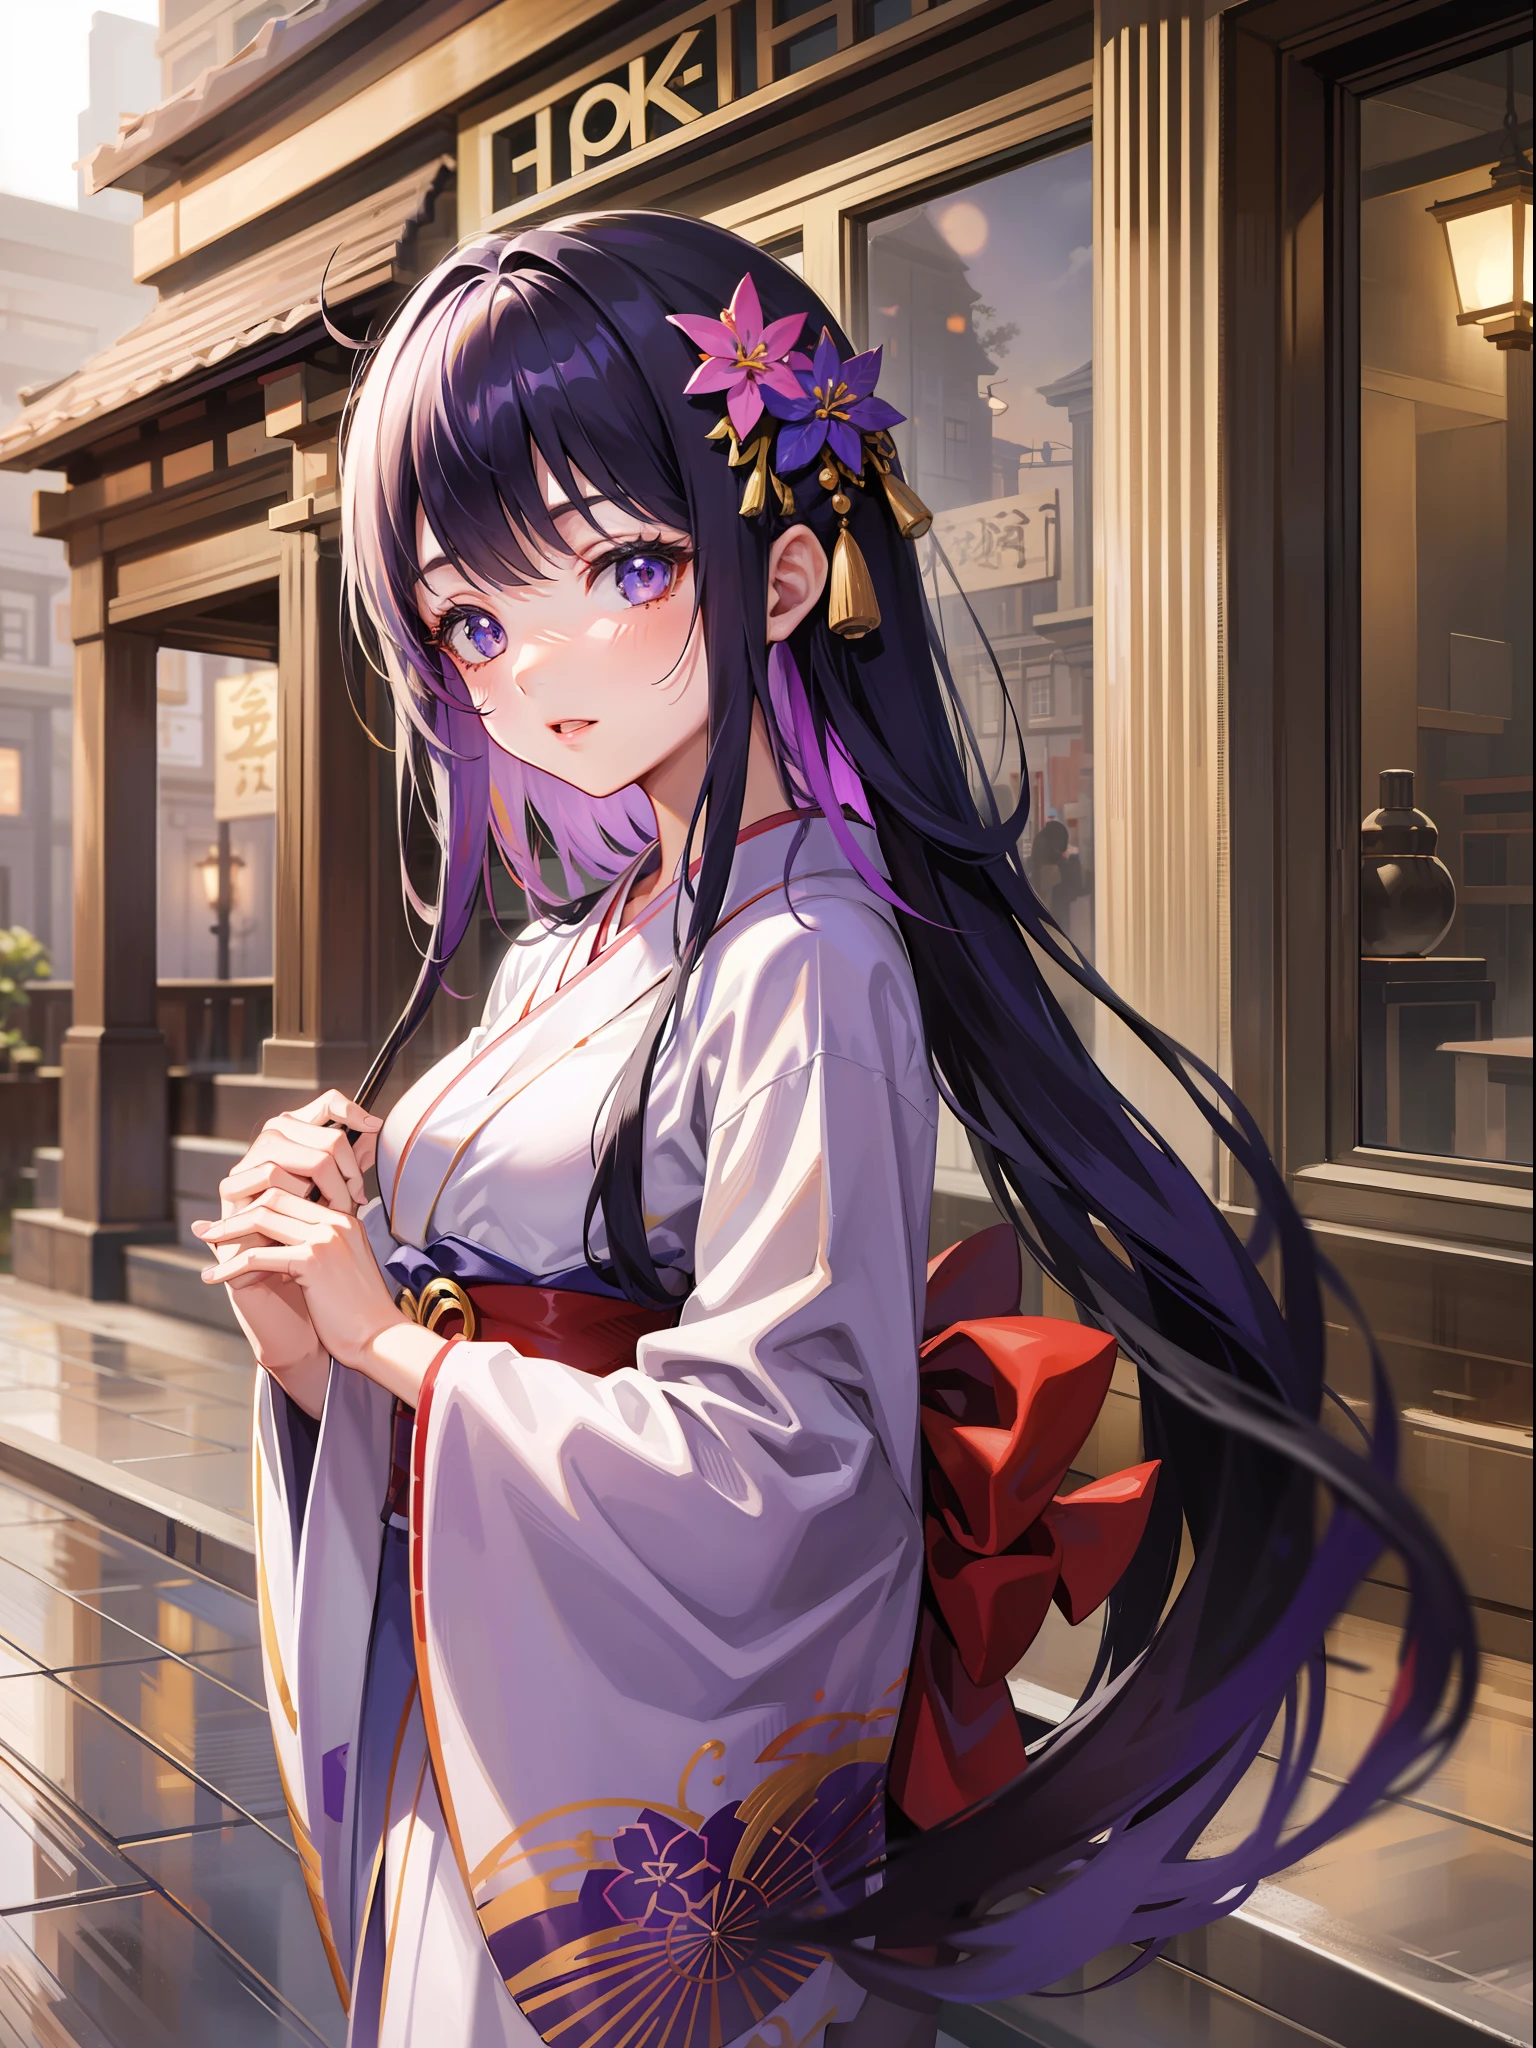 красивый [[красивый Japan]] девушка с длинными [[длинные черные волосы]] в кимоно - стиль аниме девушка, Yuzen